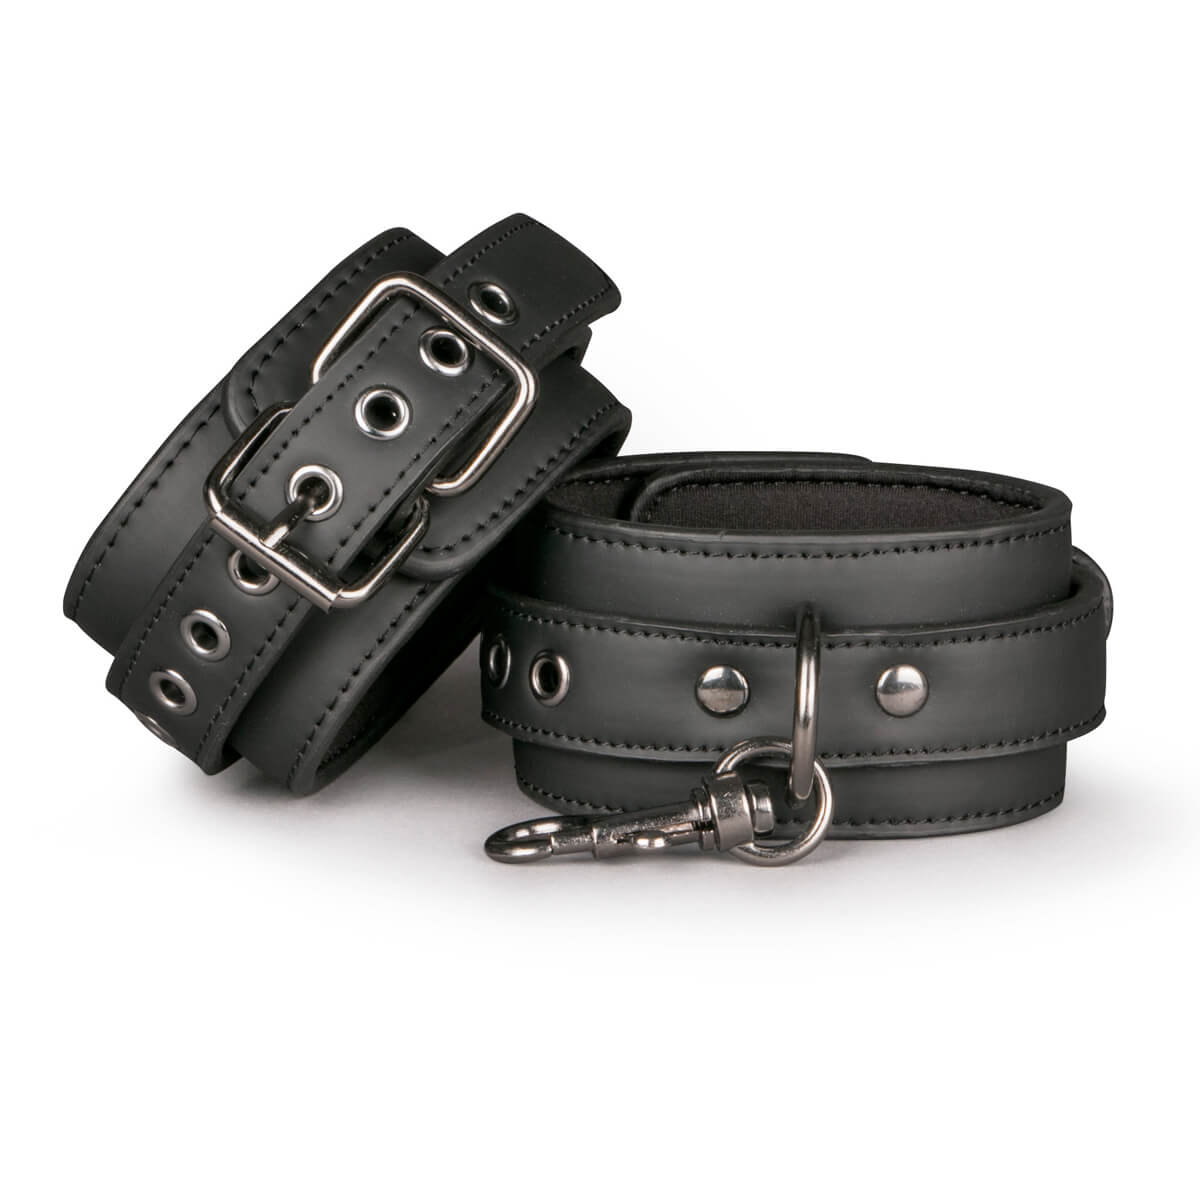 Easytoys Fetish Collection Black Leather Ankle Cuffs černá kožená pouta na kotníky